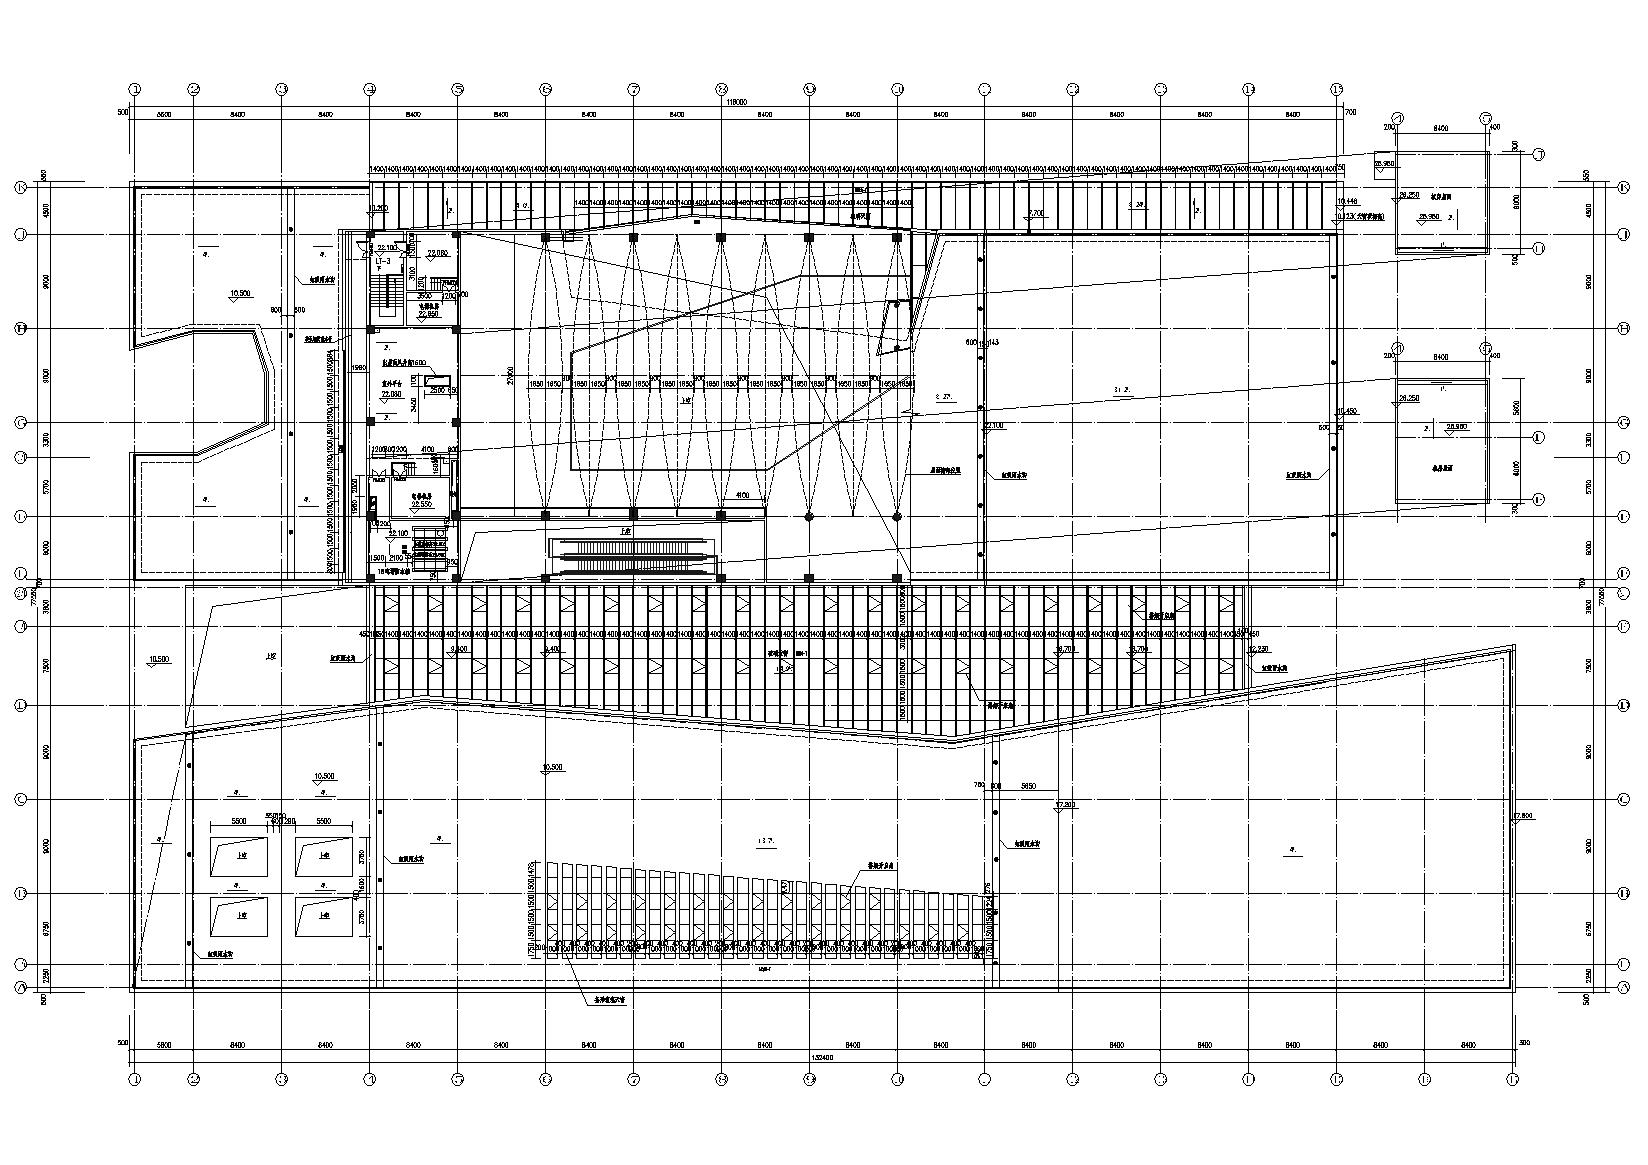 [安徽]古生物博物馆建筑工程项目施工图-屋顶平台层平面图